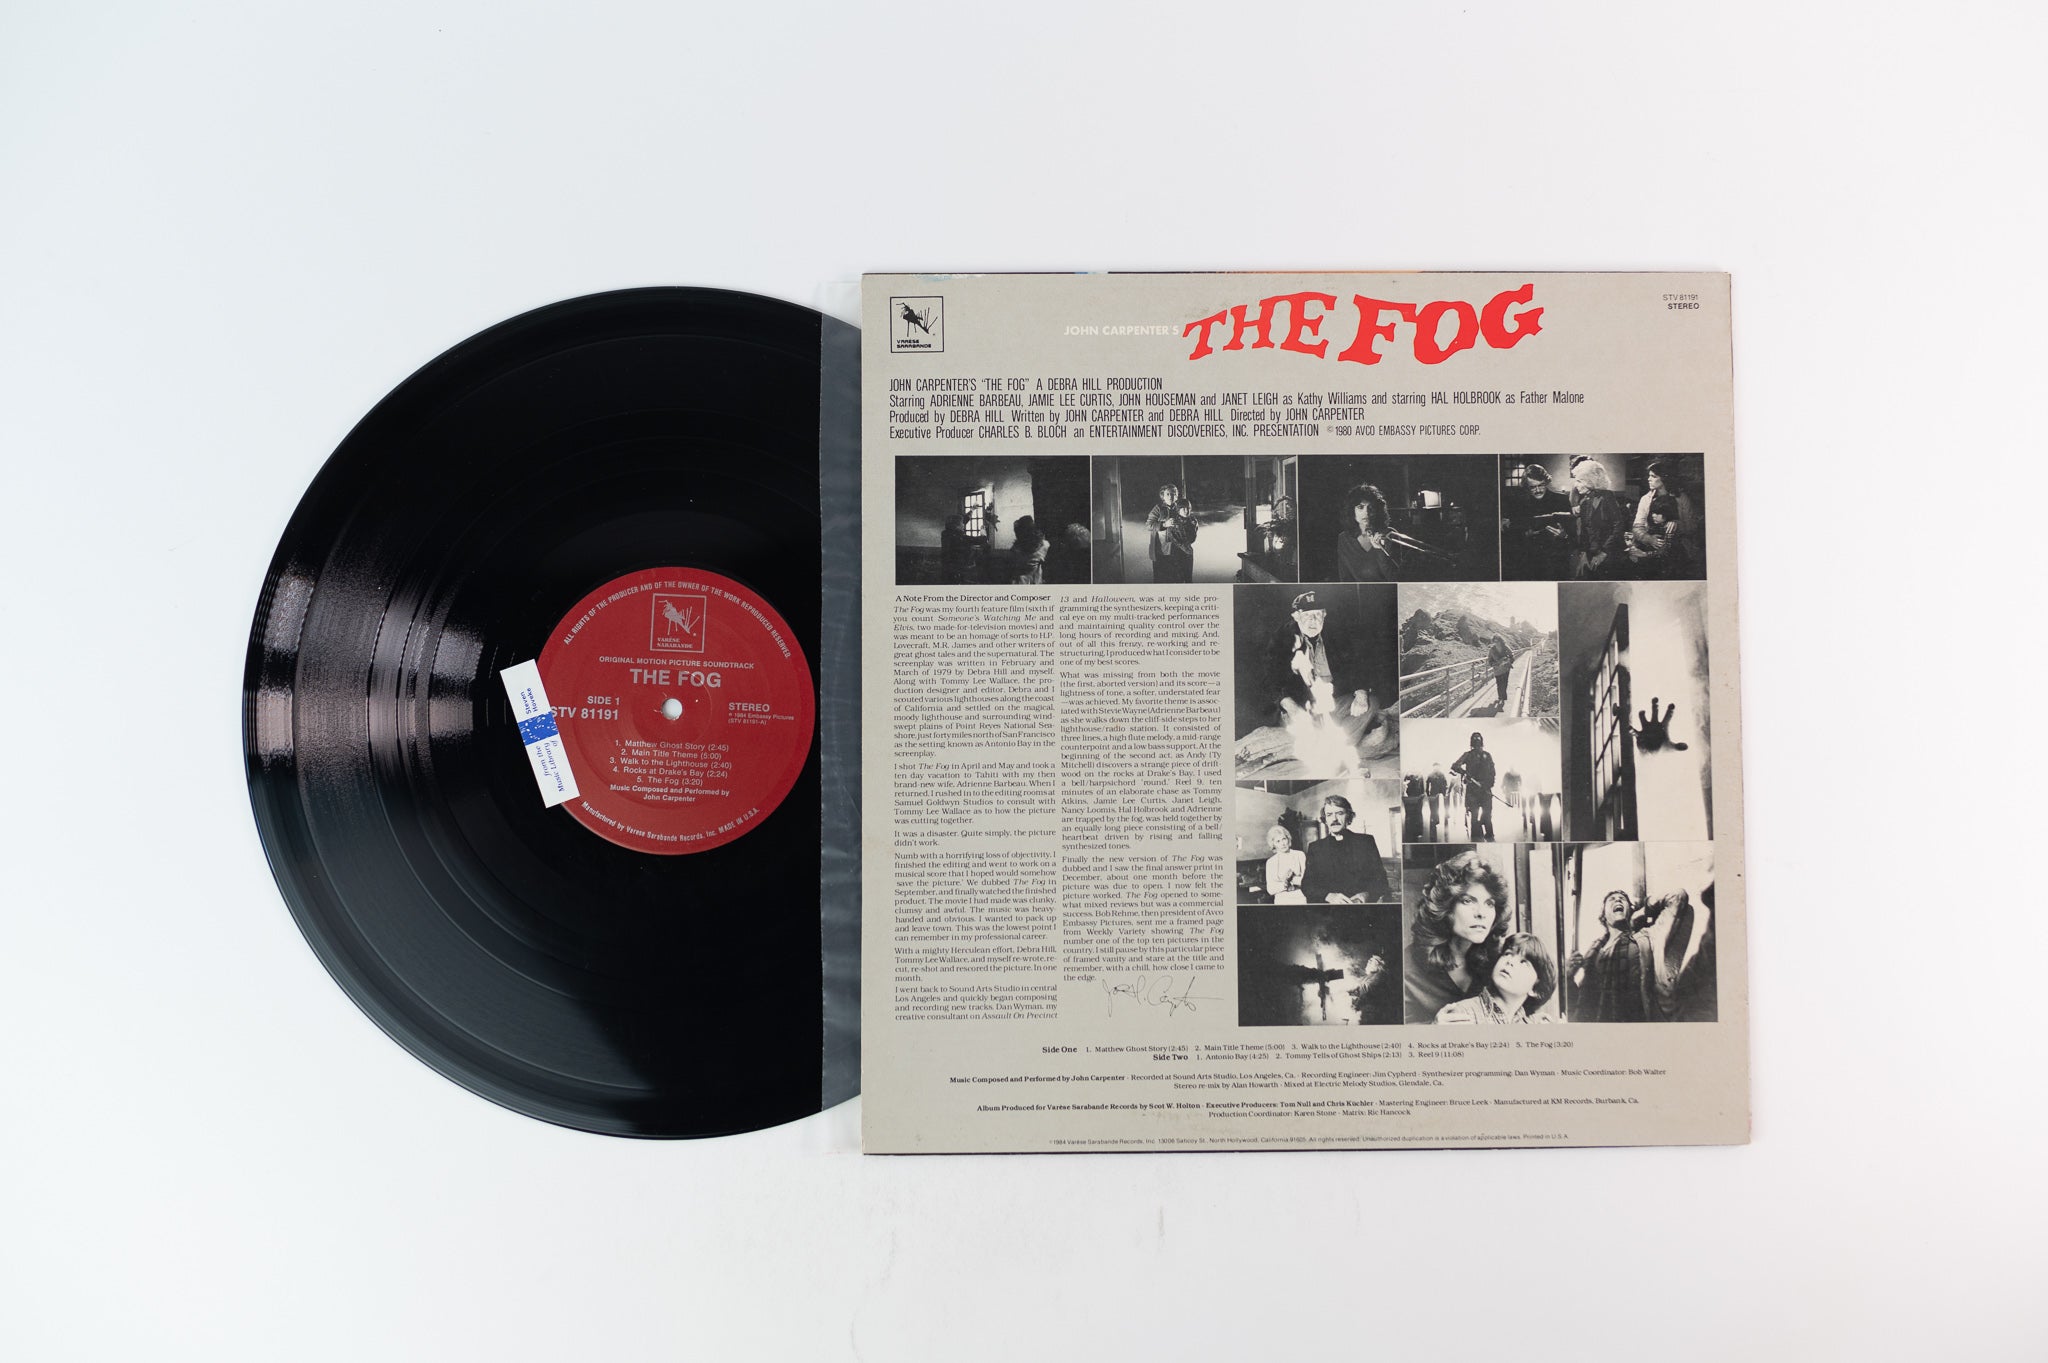 John Carpenter - The Fog (Original Motion Picture Soundtrack) on Varese Sarabande